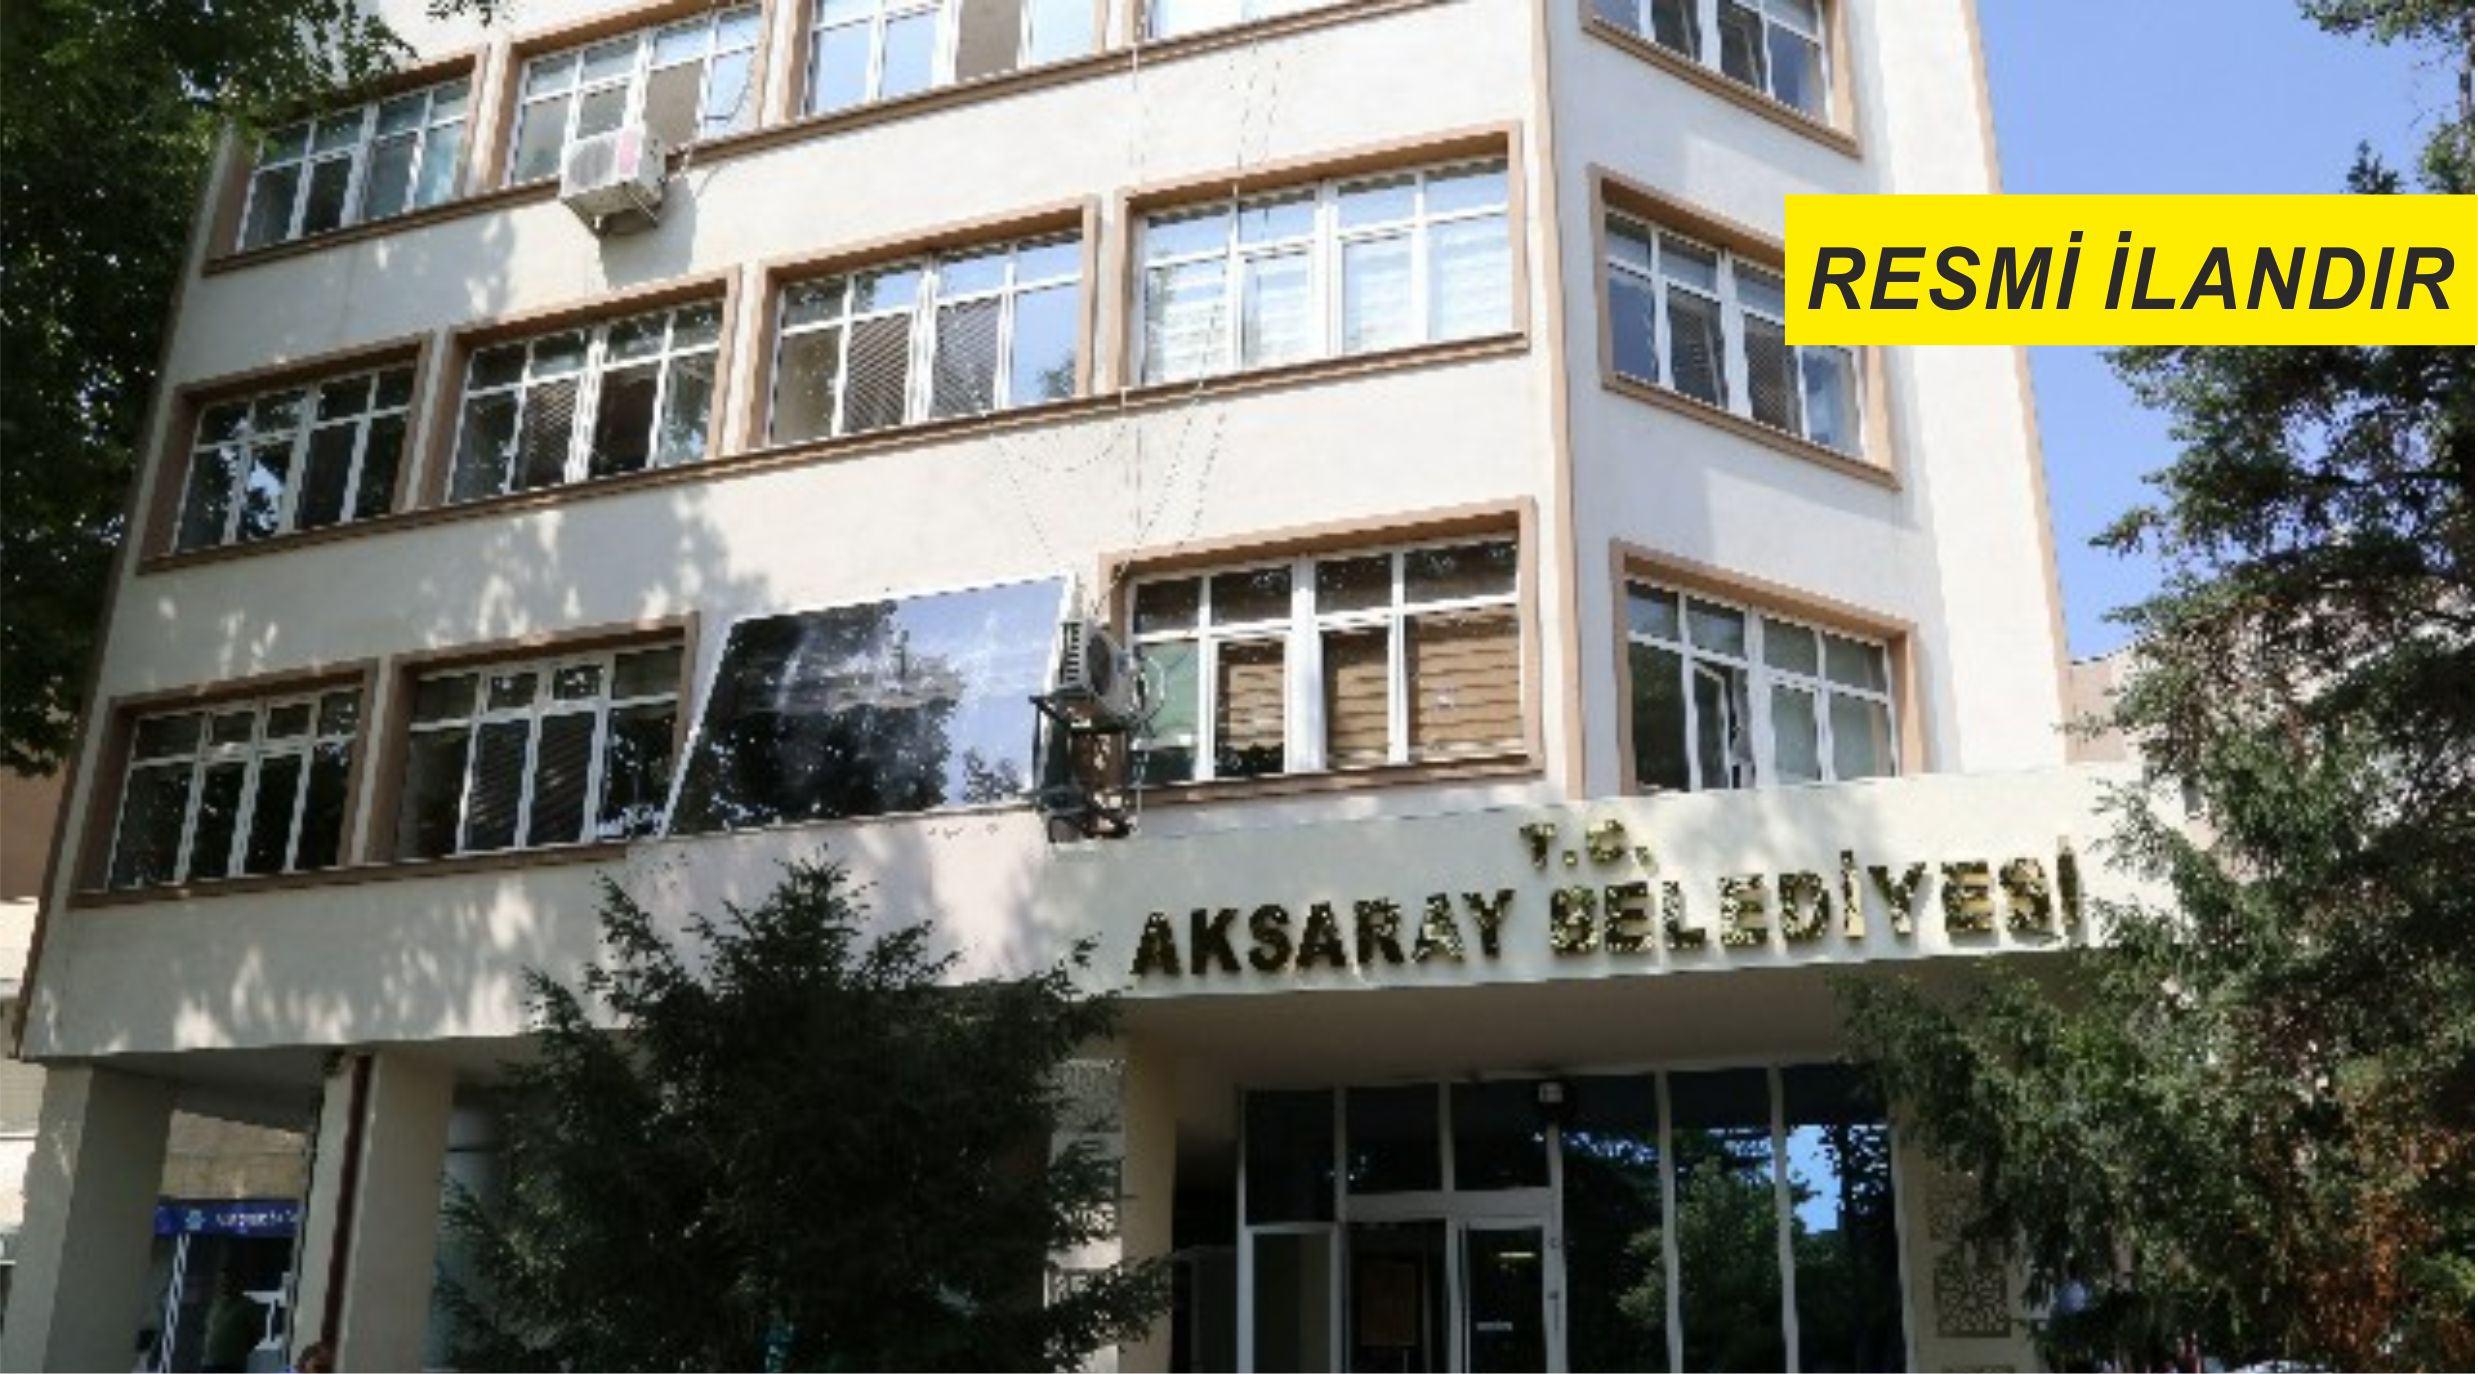 Aksaray Belediye Başkanlığından taşınmaz mal satış ilanı